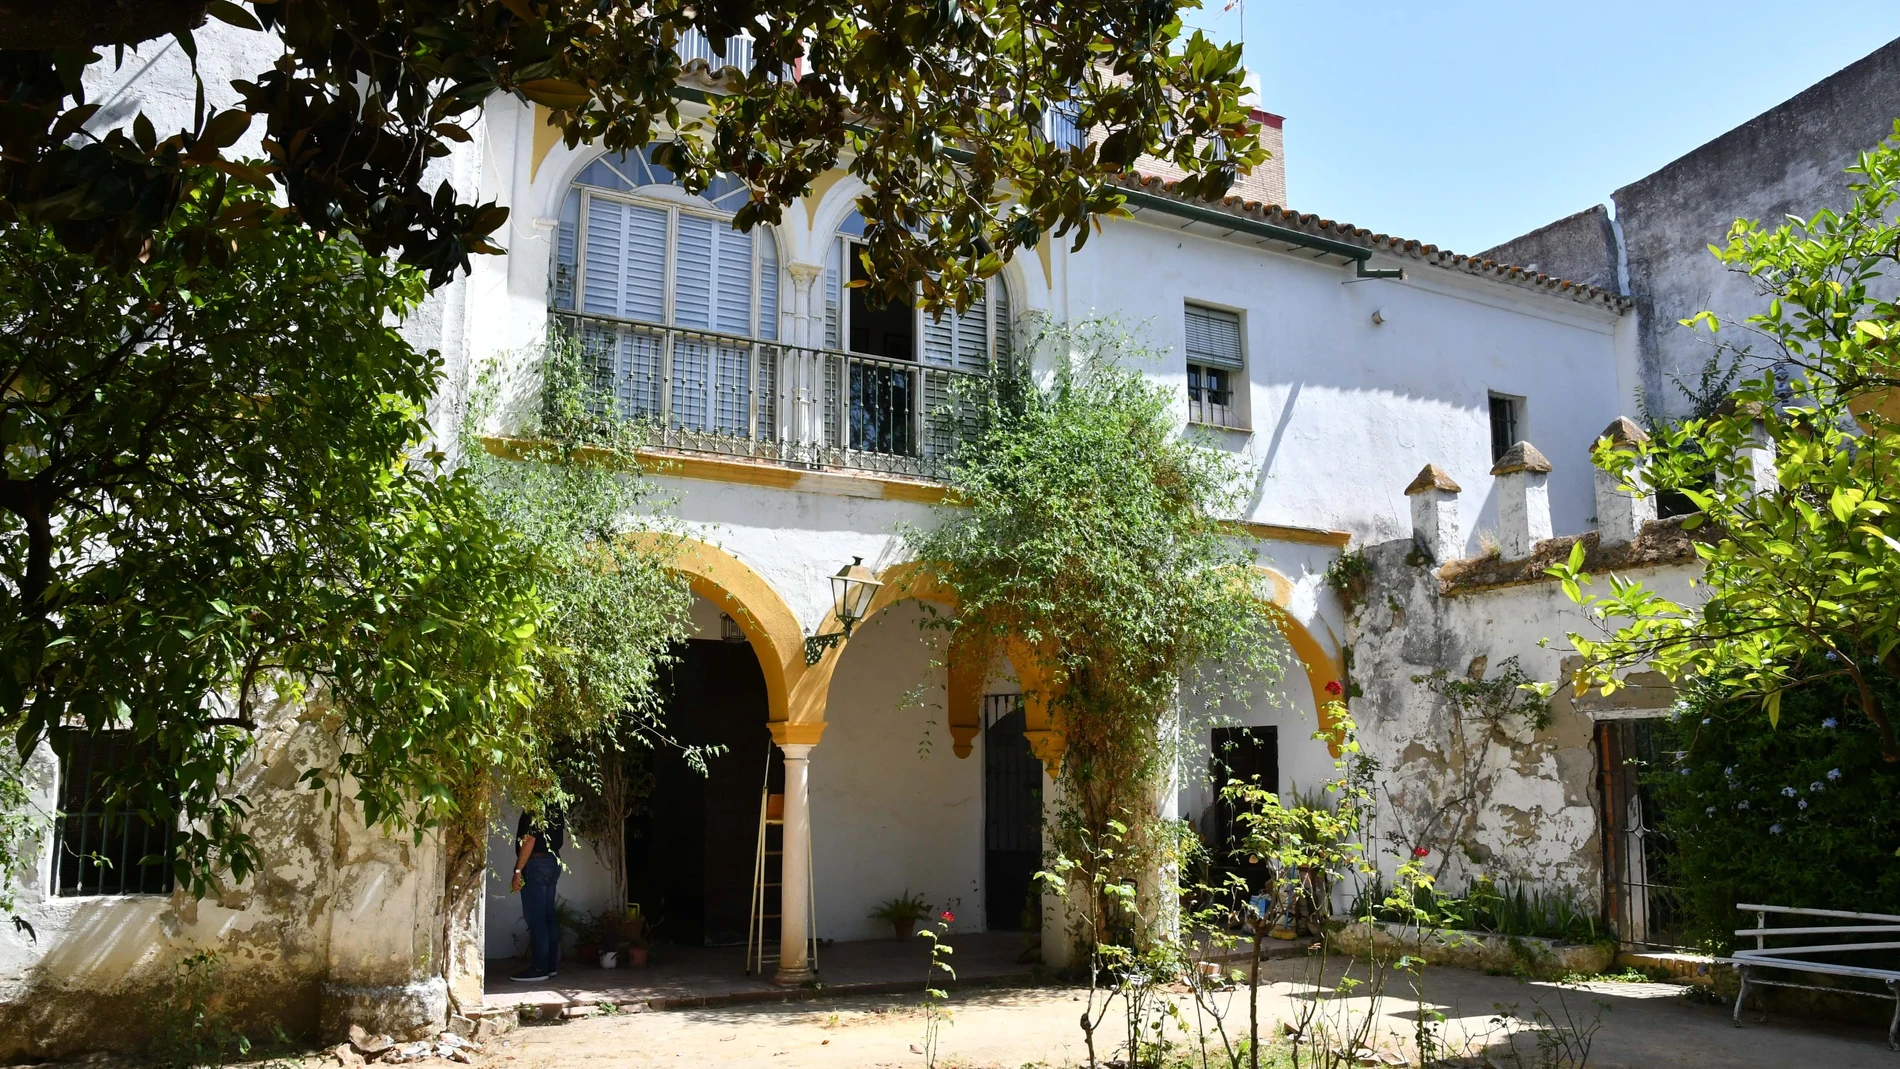 Sevilla.-Tomares compra la Hacienda de Montefuerte por 865.000 euros donde irá un centro cultural y parte del tesoro